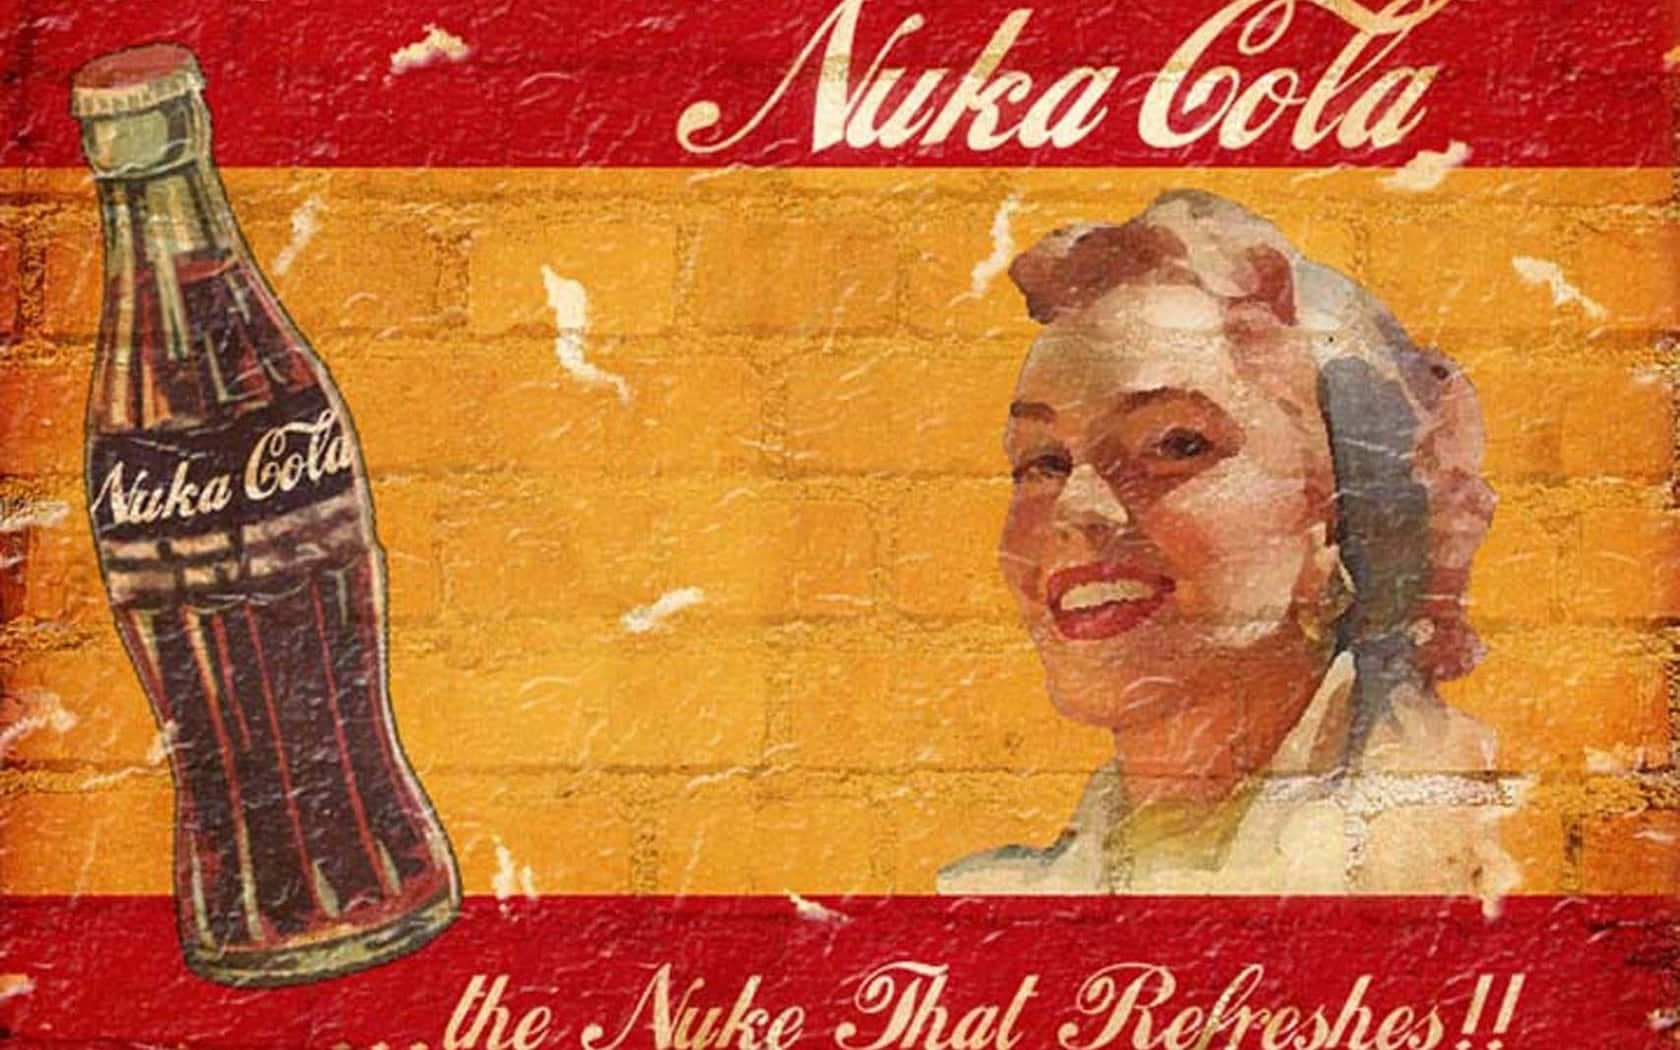 Nyd den sprød smag af Nuka Cola! Wallpaper